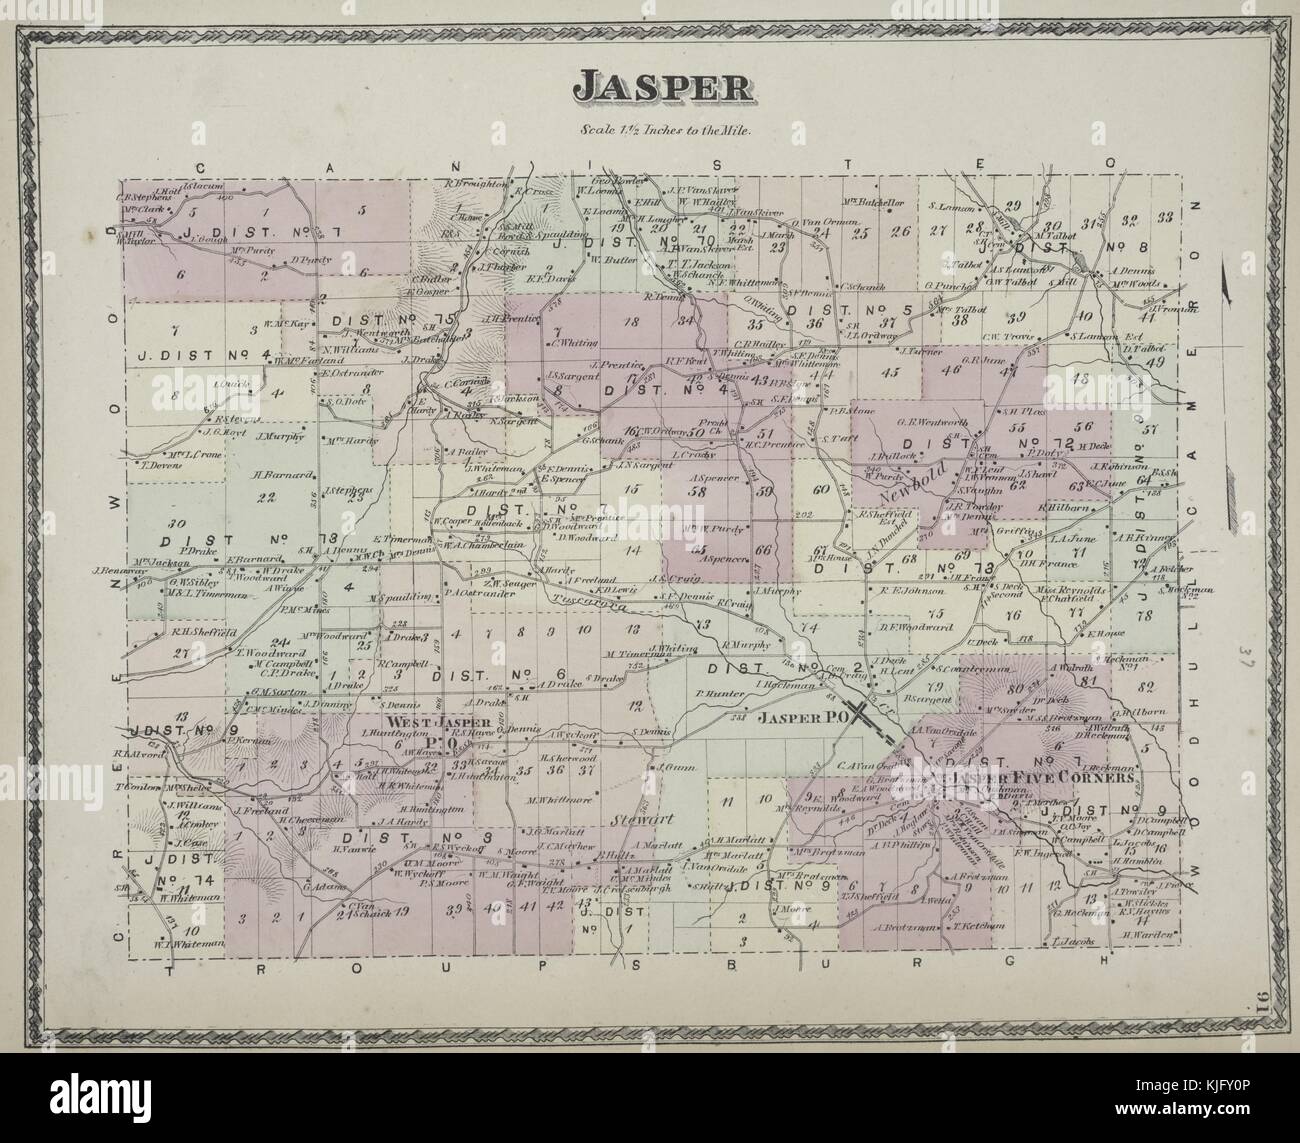 Image cartographique gravée d'un atlas, avec légende originale indiquant 'Jasper Township', 1873. De la Bibliothèque publique de New York. Banque D'Images